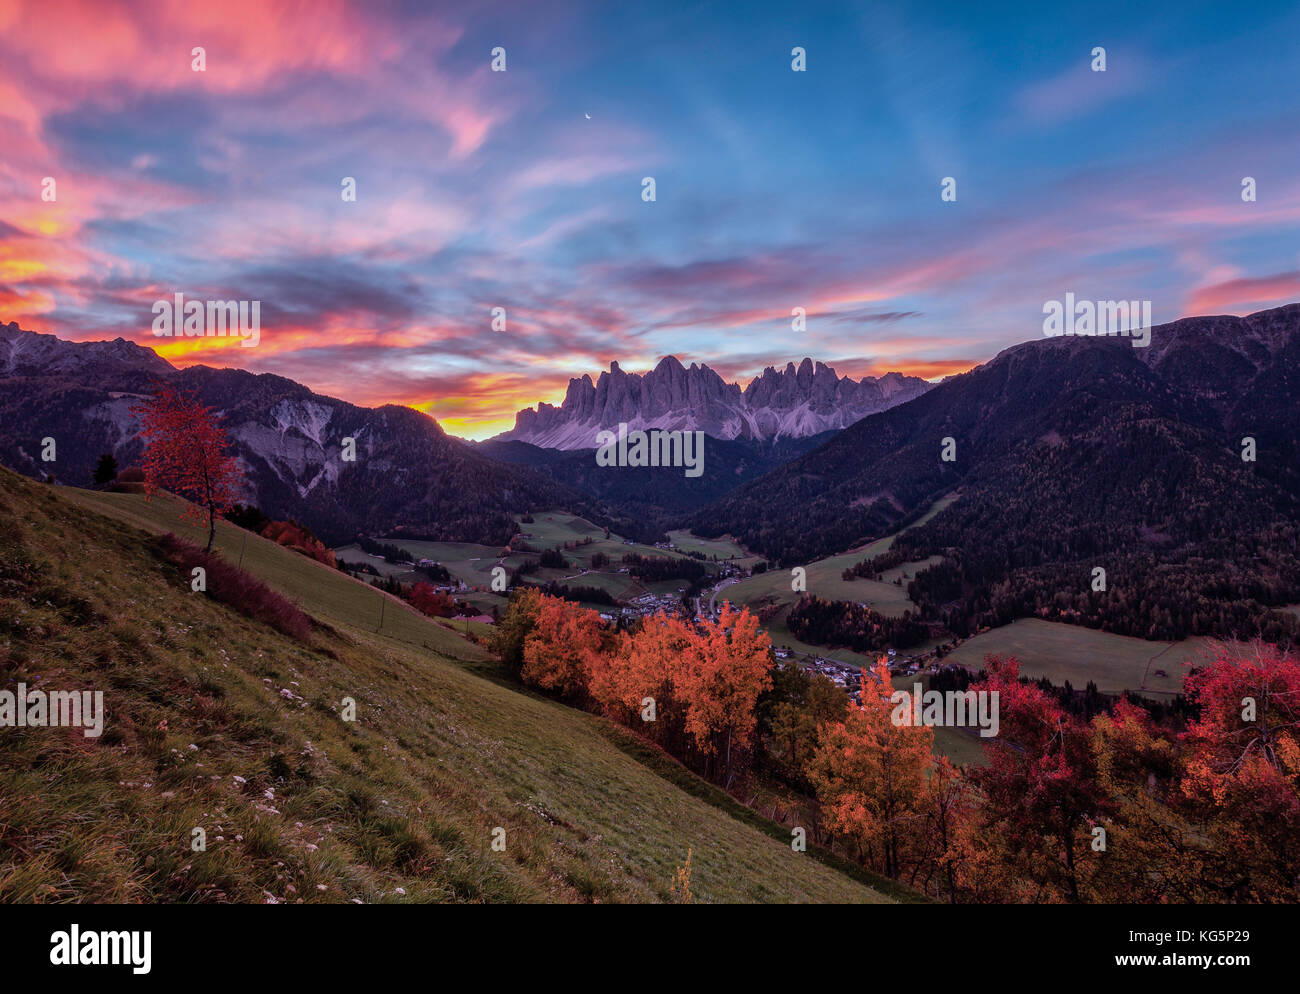 Des arbres d'automne colorés encadrent le groupe d'Odle et le village de Saint-Magdalena à l'aube Vallée de Funes Sud Tyrol Dolomites Italie Europe Banque D'Images